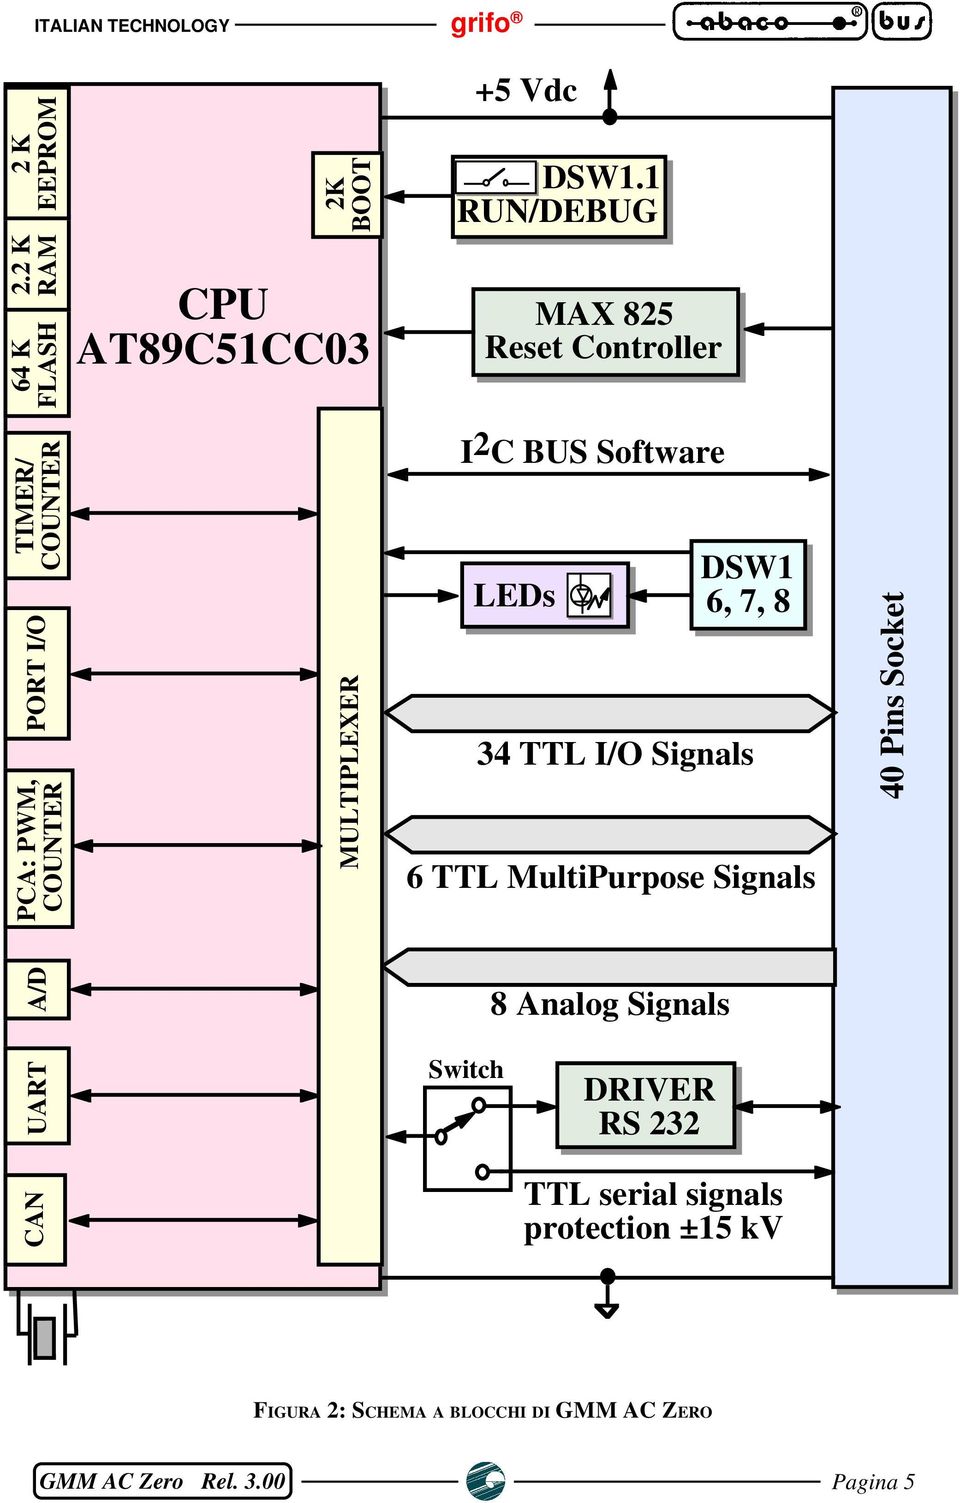 MULTIPLEXER I2C BUS Software LEDs DSW1 6, 7, 8 34 TTL I/O Signals 6 TTL MultiPurpose Signals 40 Pins Socket